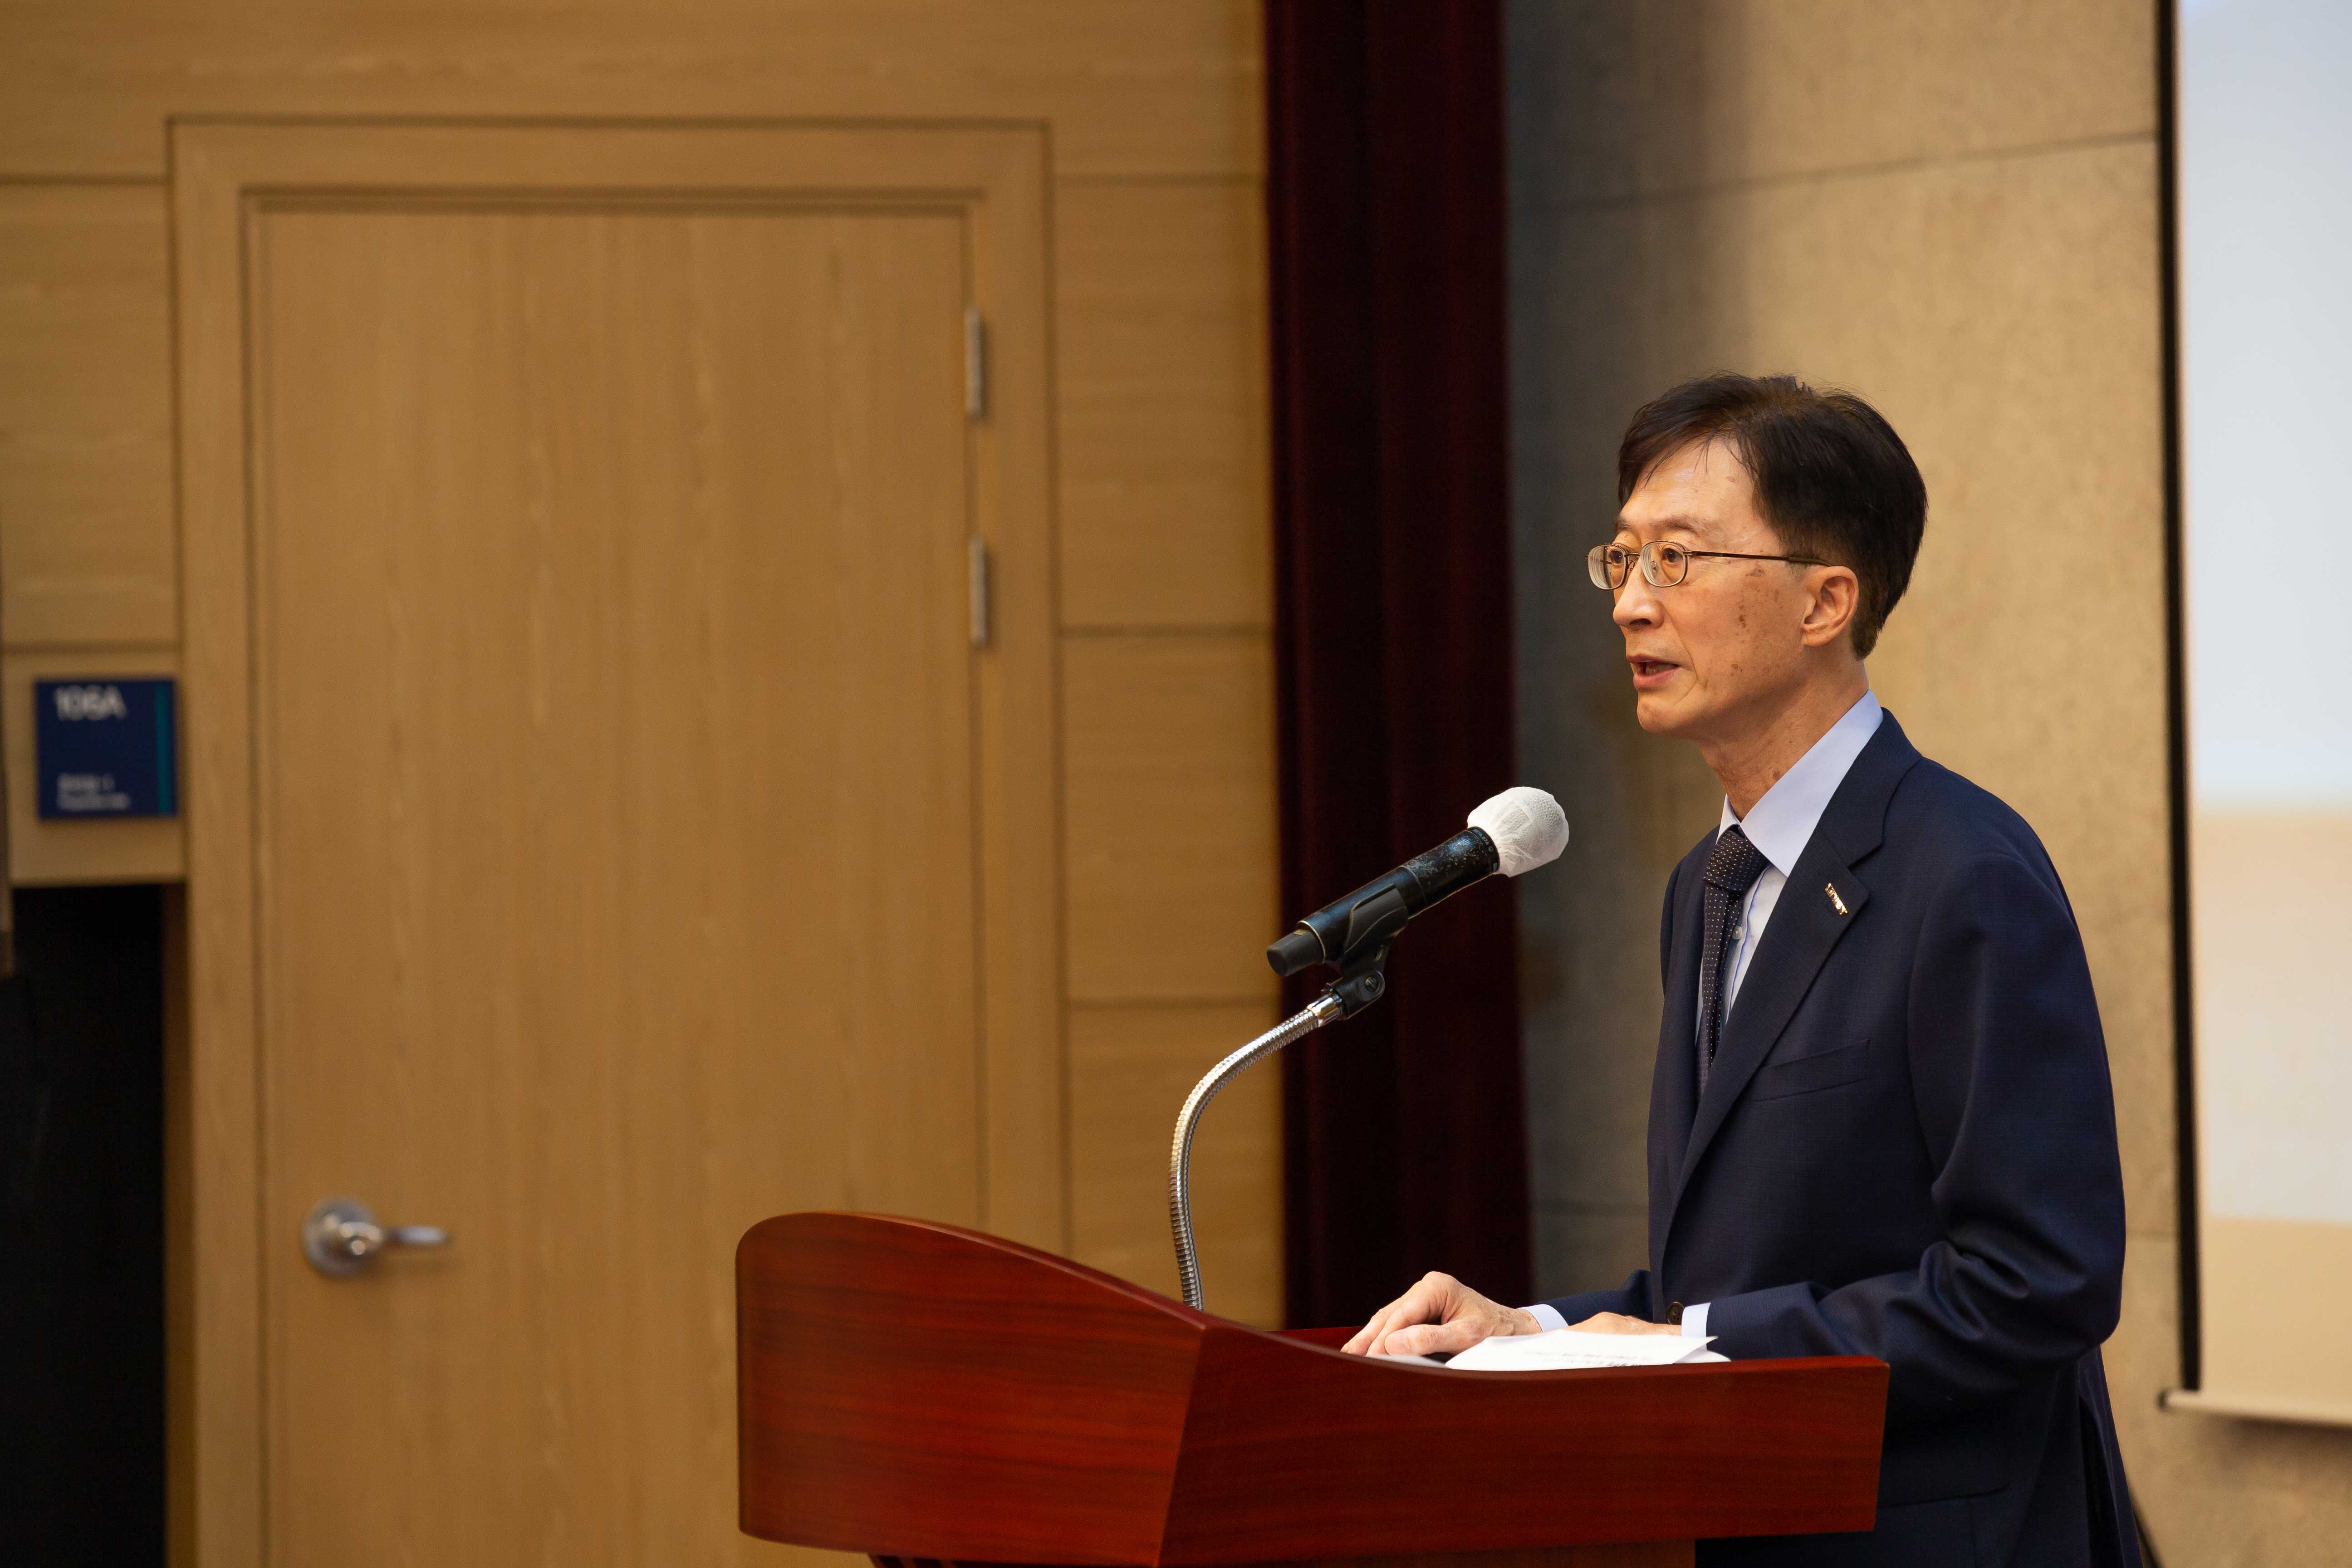 이용훈 총장은 축사를 통해 제조혁신을 위한 UNIST의 역할을 강조했다. | 사진: 김경채